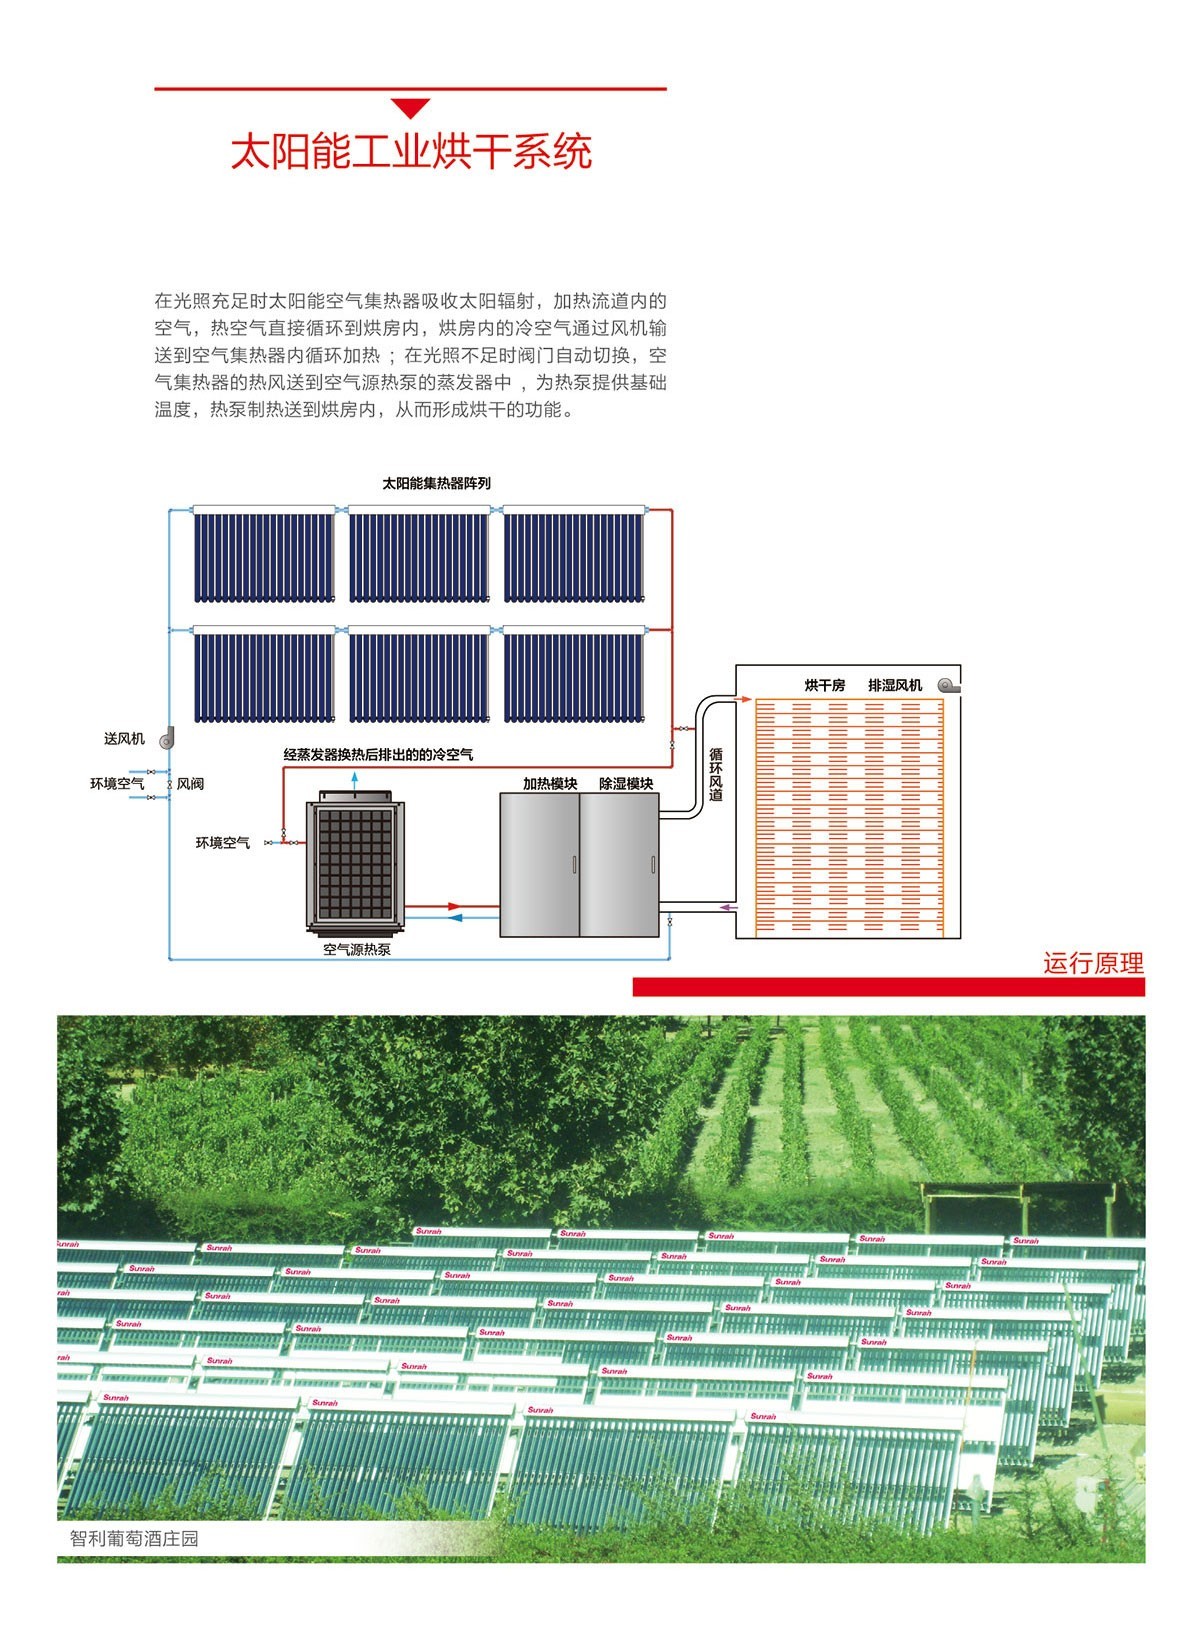 太陽雨太陽能|太陽能熱水器|燃氣熱水器|電熱水器|抽油煙機|燃氣灶具